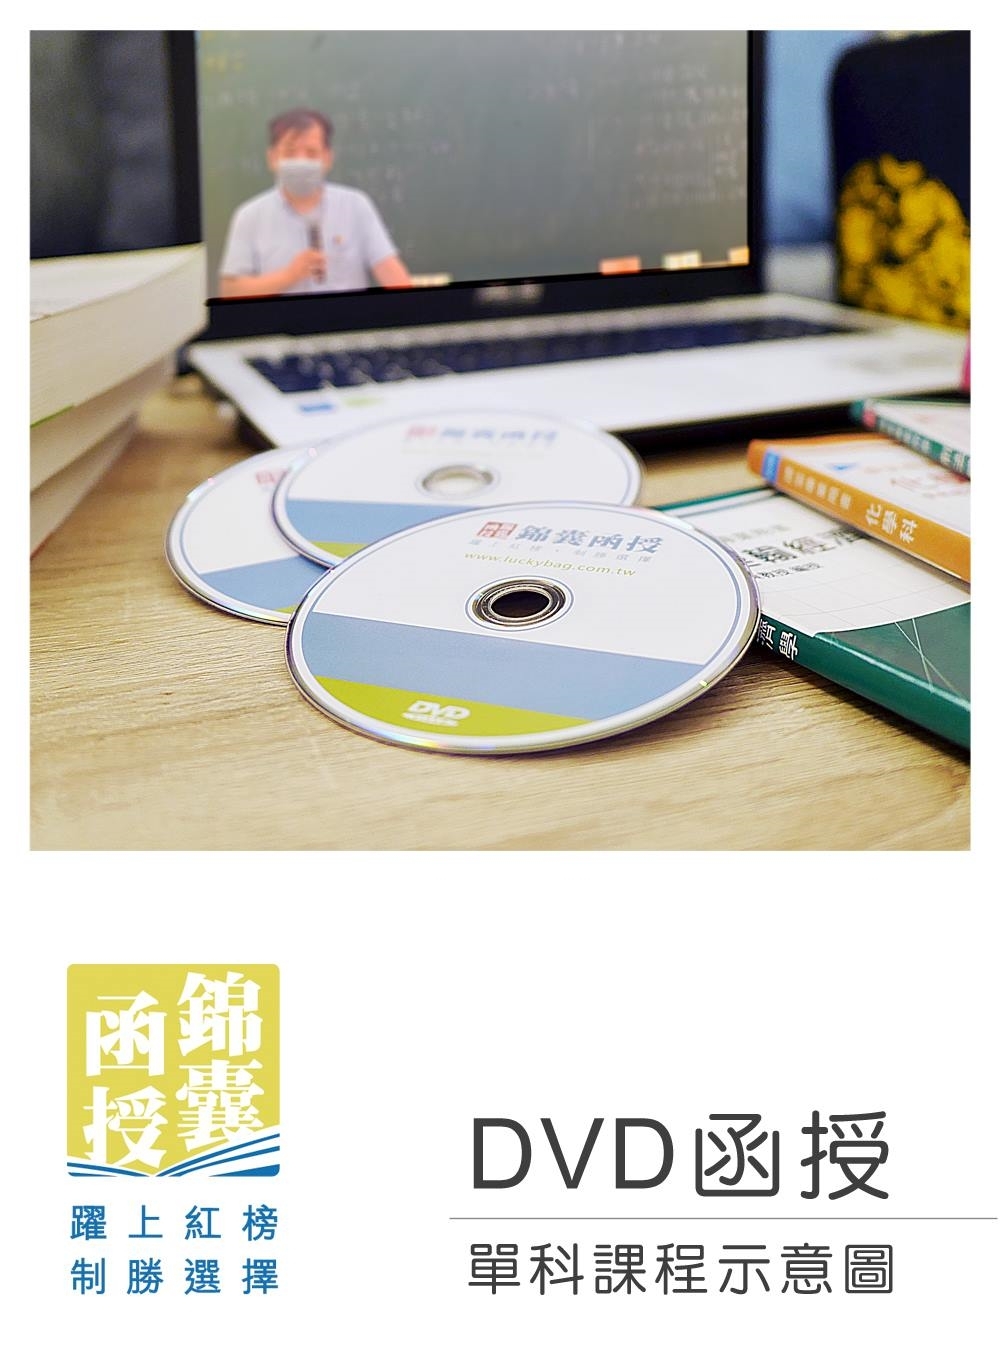 【DVD函授】洗錢防制法-單科...